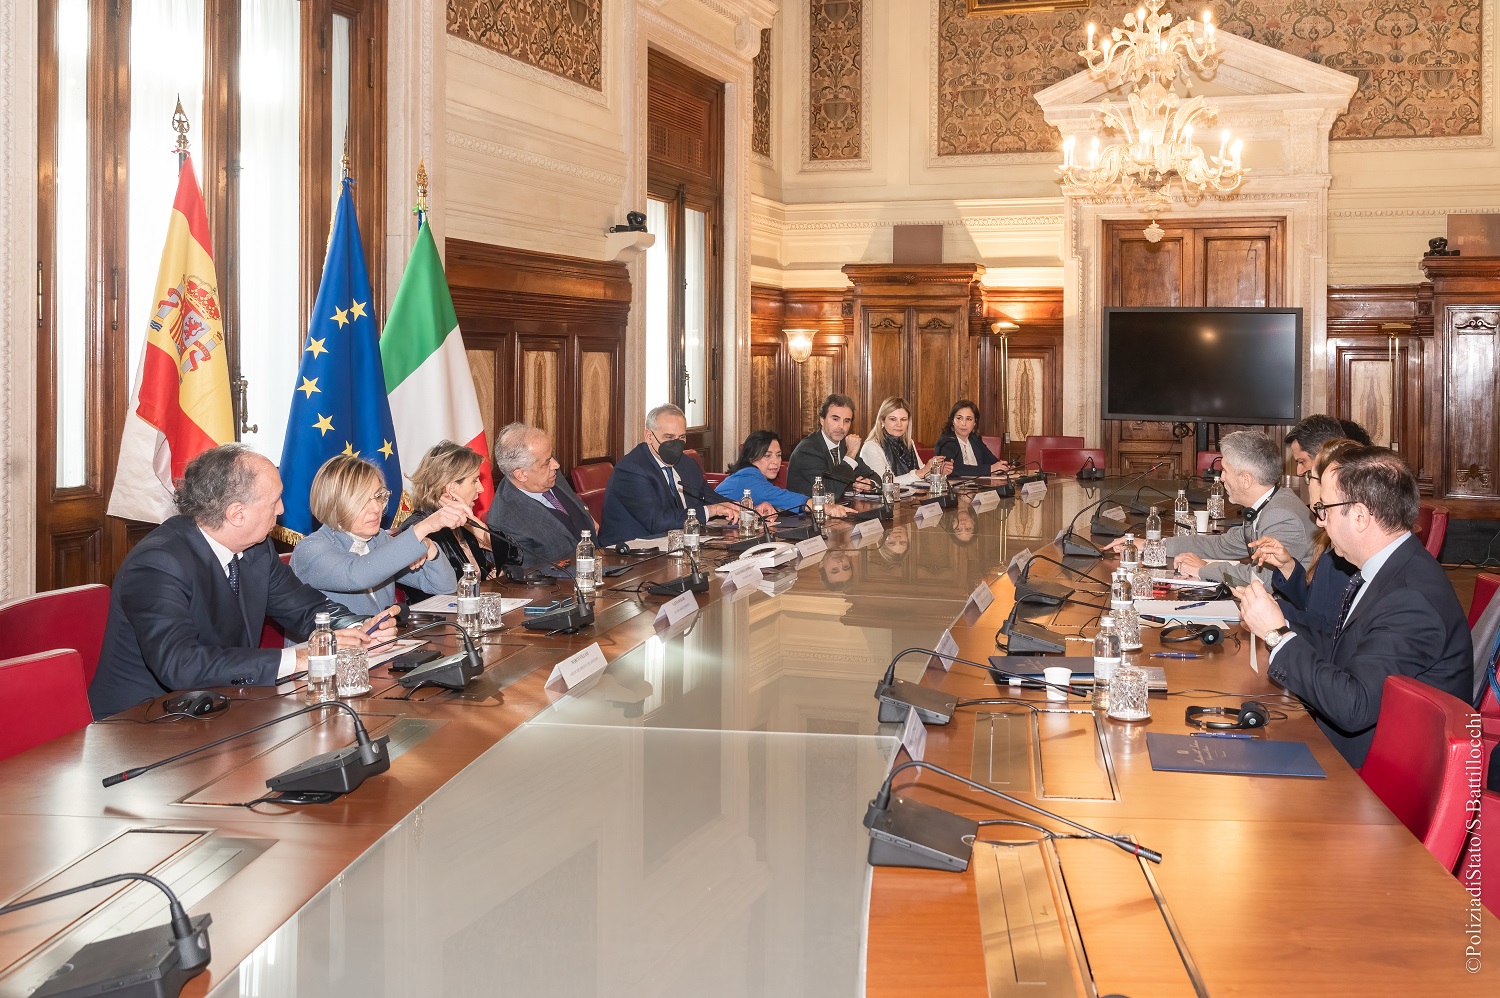 Grande-Marlaska inicia con su homólogo italiano la ronda de reuniones internacionales para preparar la presidencia española de la UE